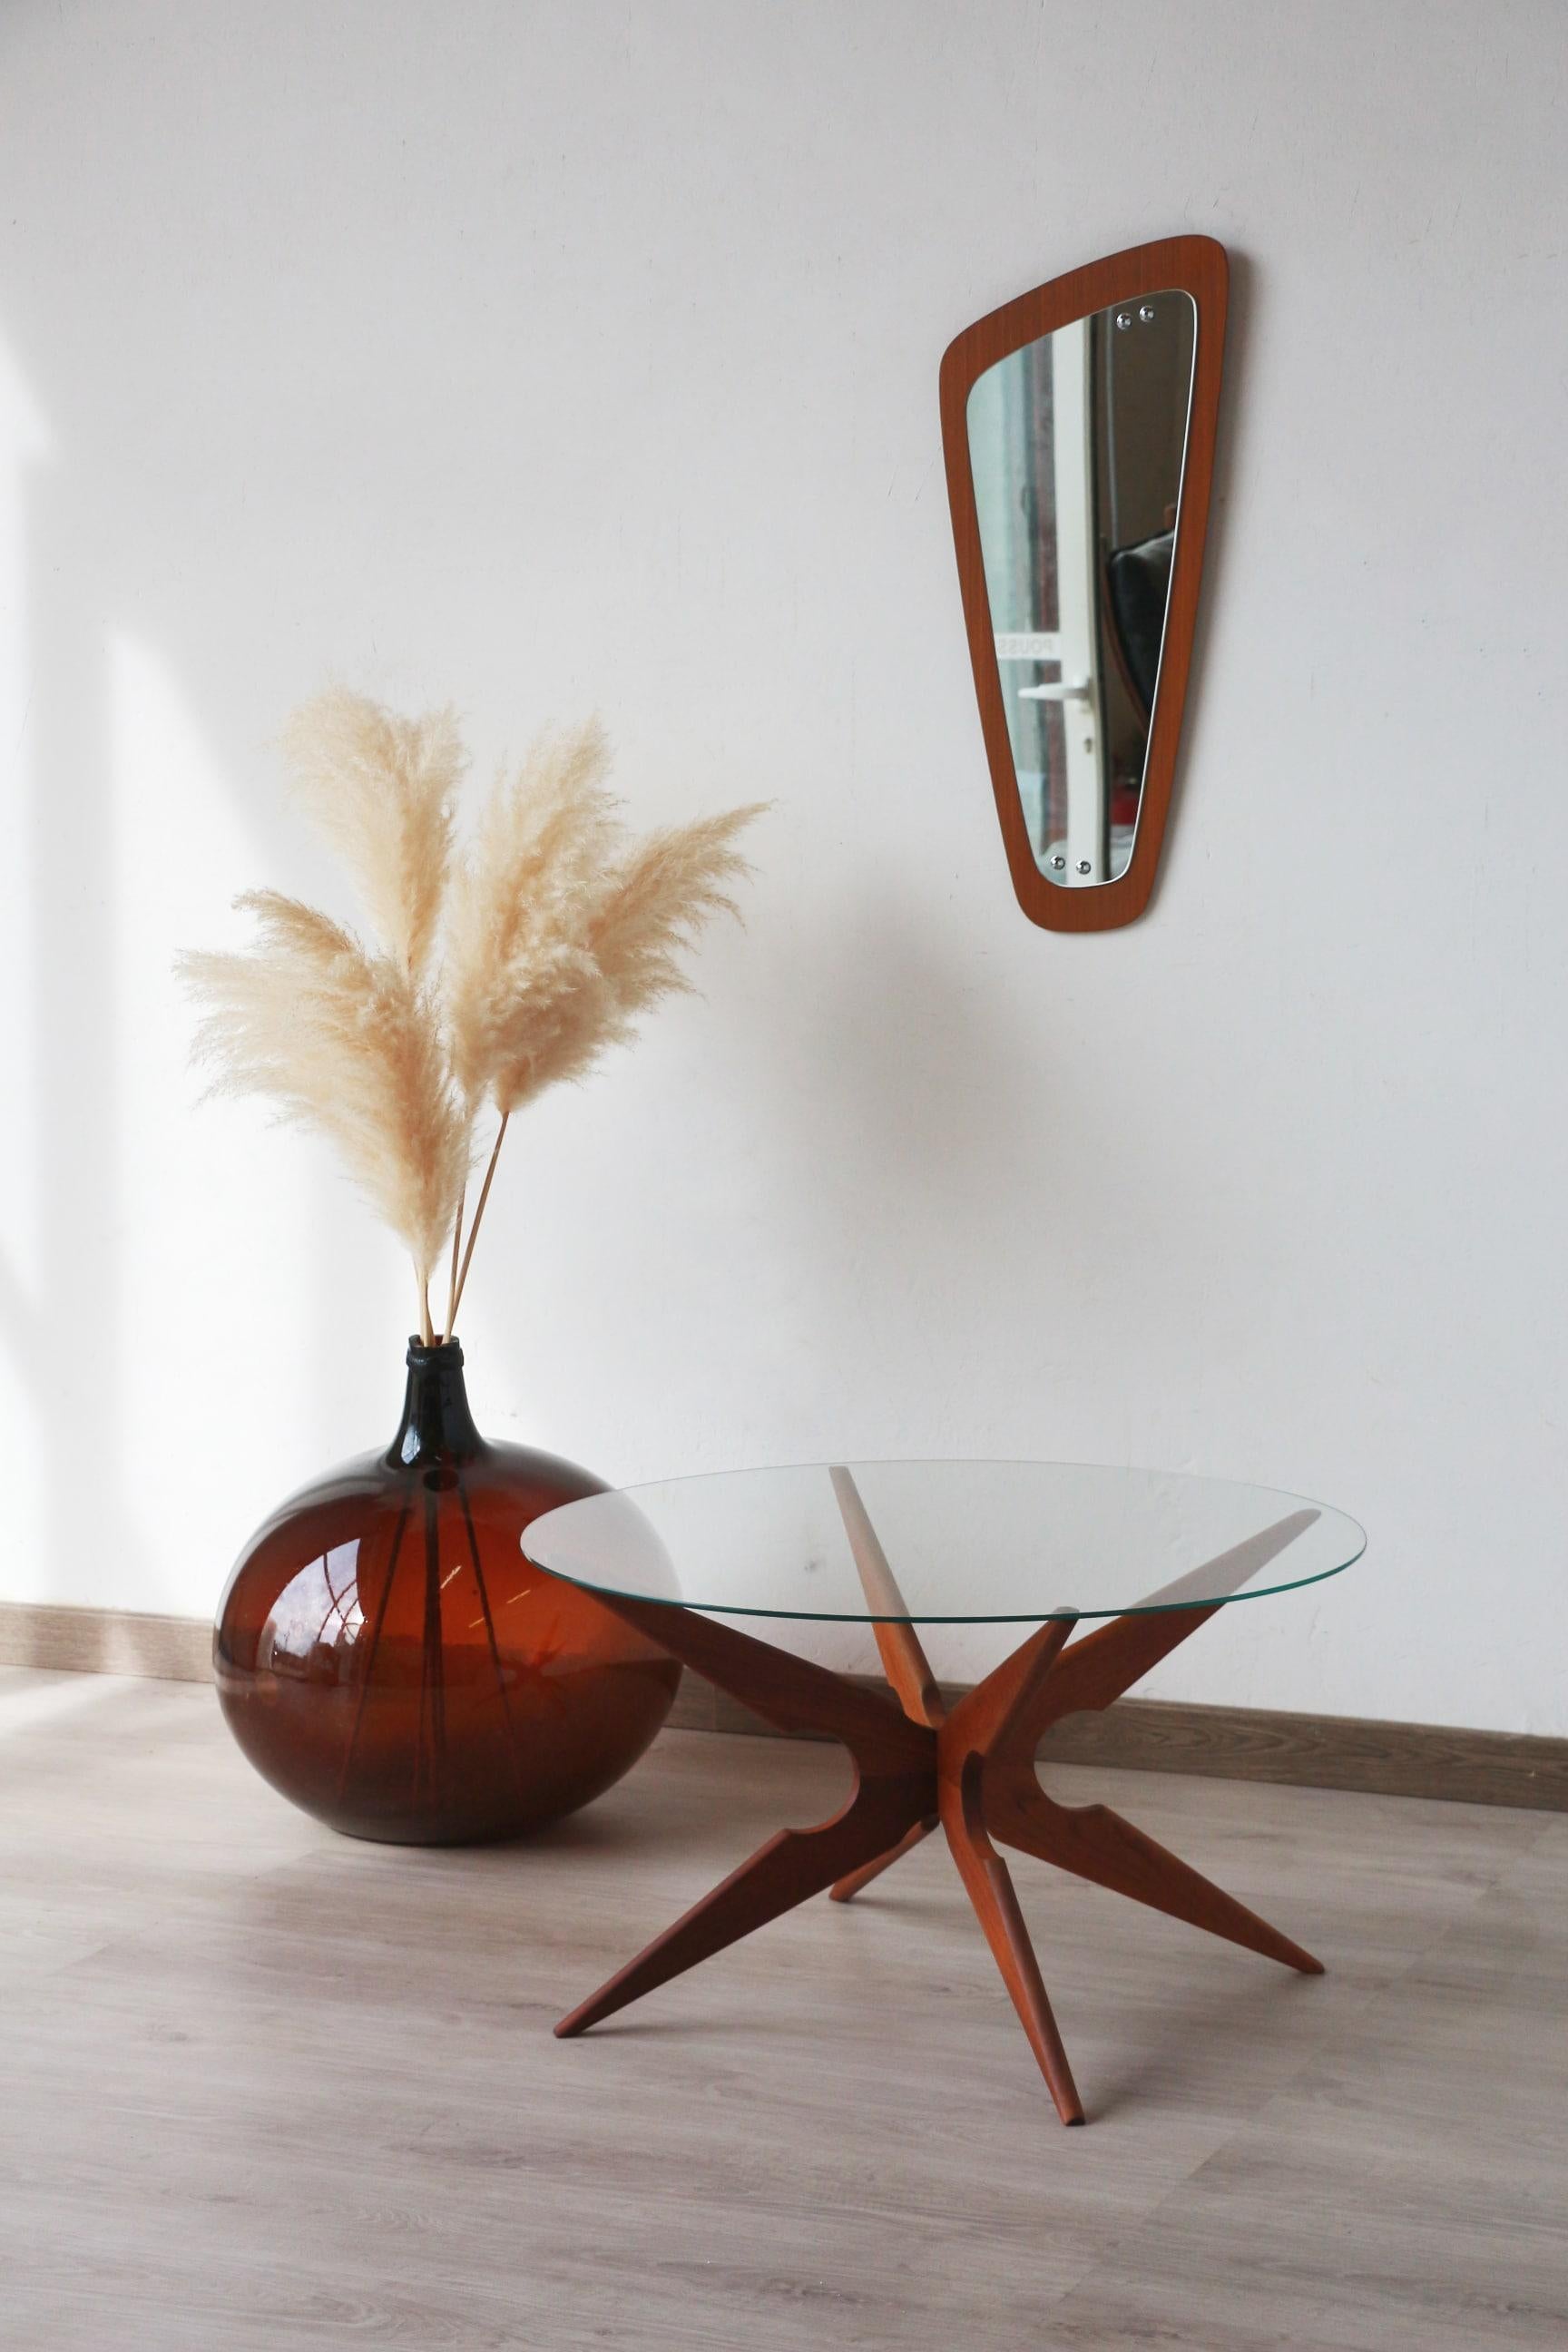 Eine unter dem Namen Spider bekannte Tischplatte, die von dem dänischen Möbelhersteller Sika Møbler in den 1960er Jahren hergestellt wurde.

Die Struktur aus Holz ist aus massivem Teakholz.

Die beiden Abschnitte des Sockels sind ineinander